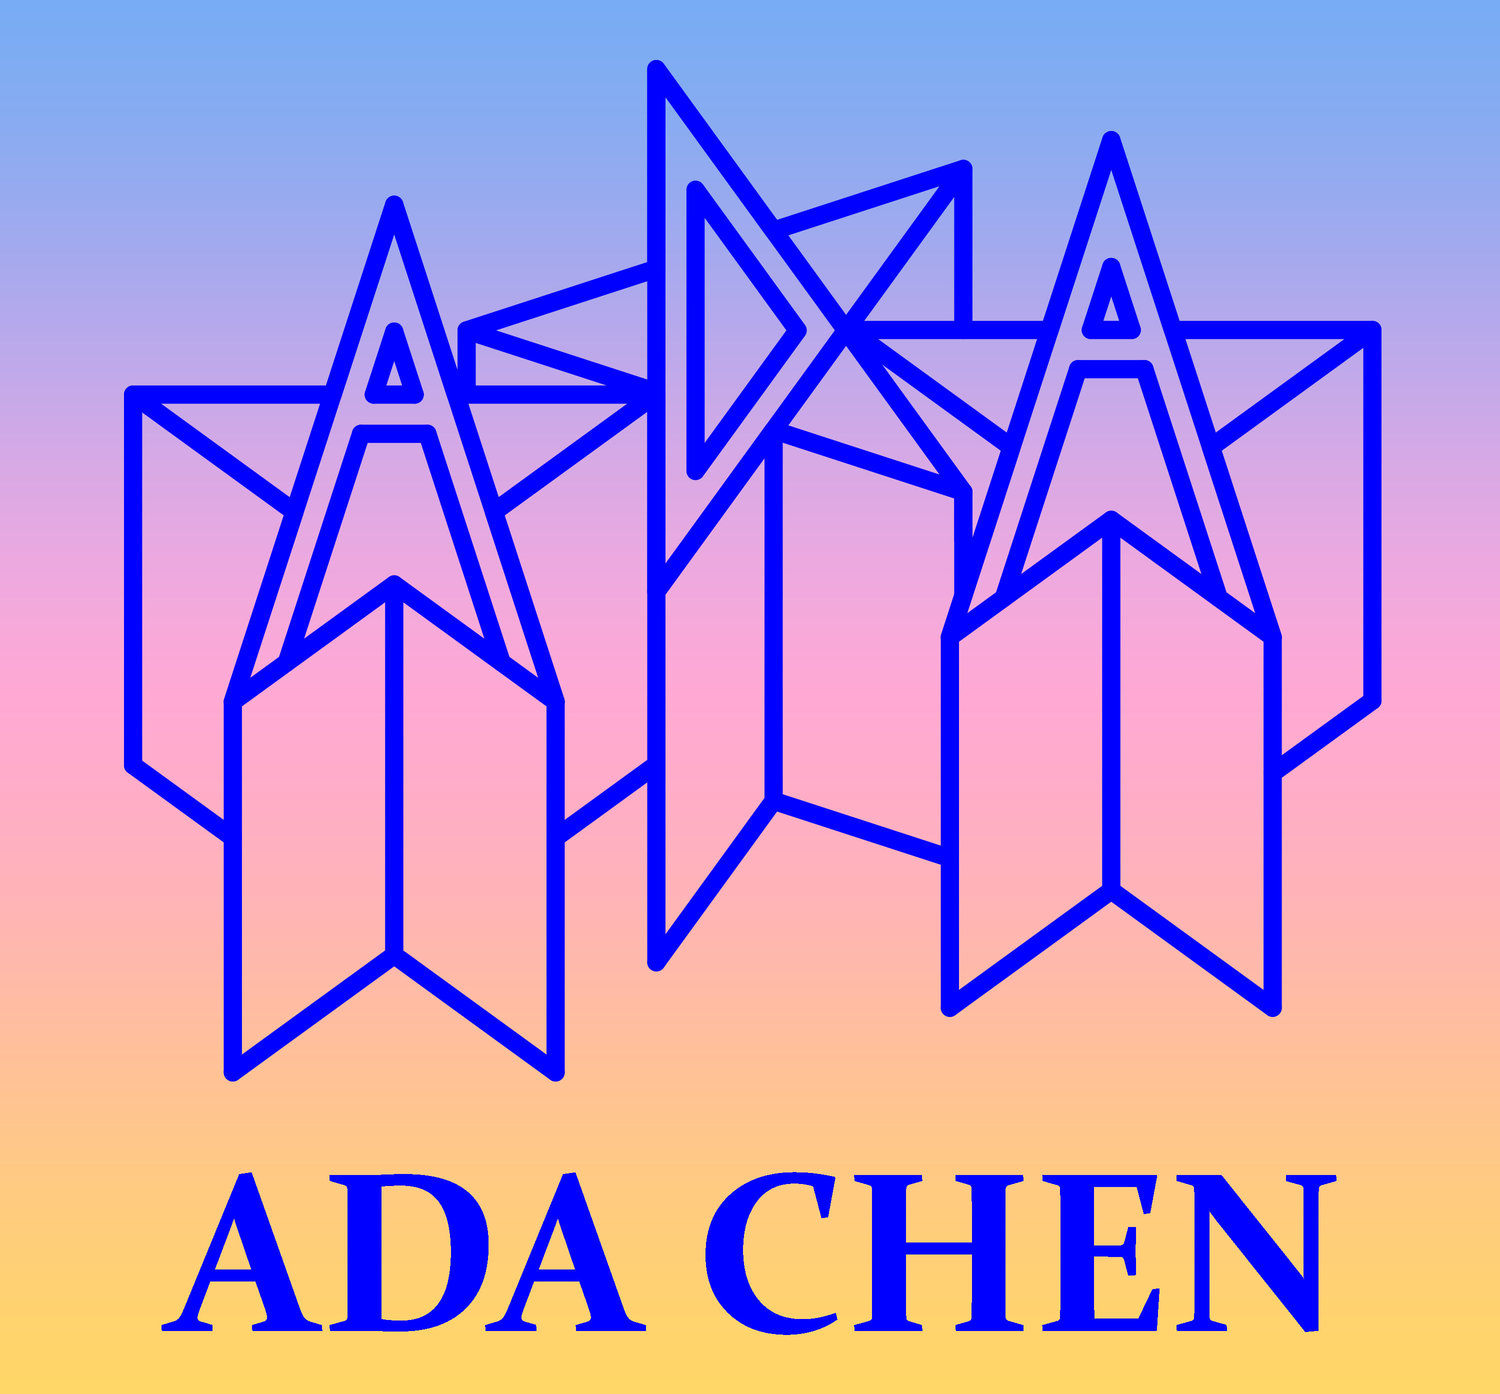 ADA CHEN